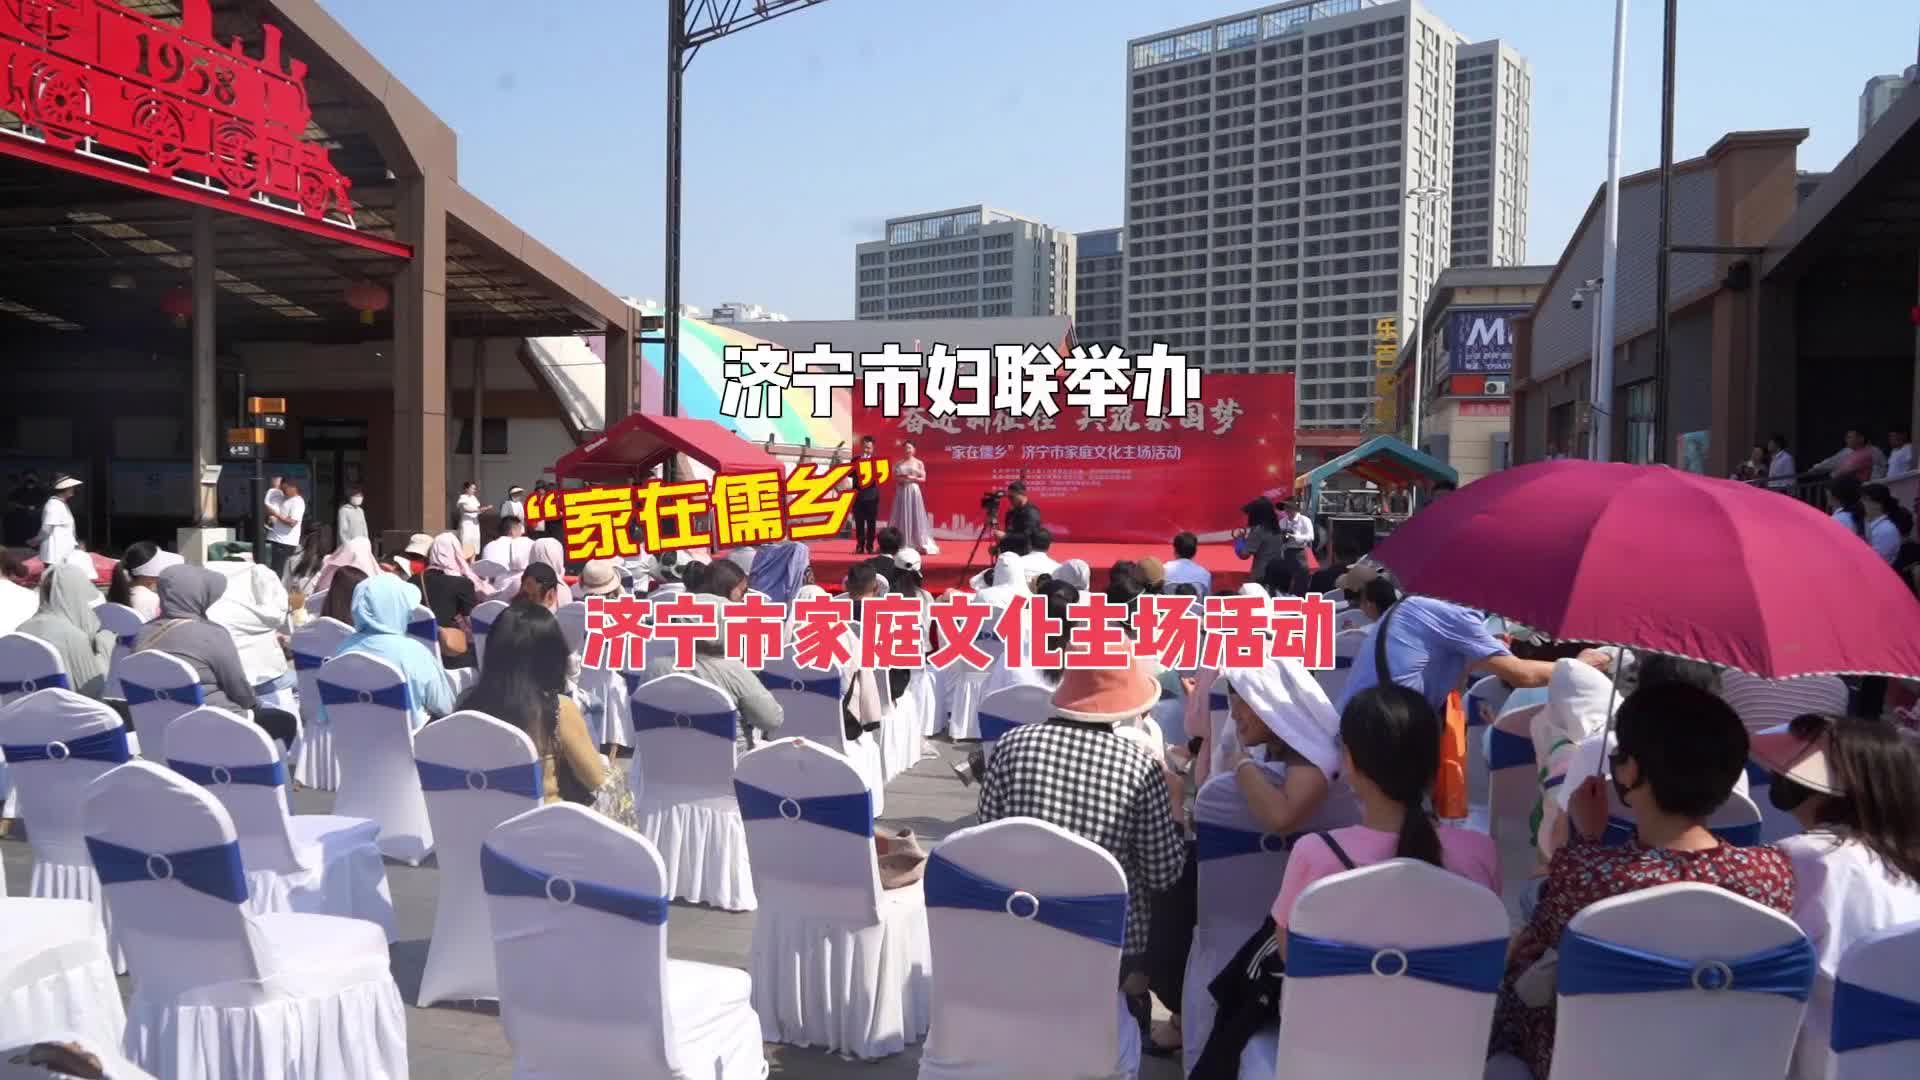 更济宁 | 济宁市妇联举办“家在儒乡”济宁市家庭文化主场活动